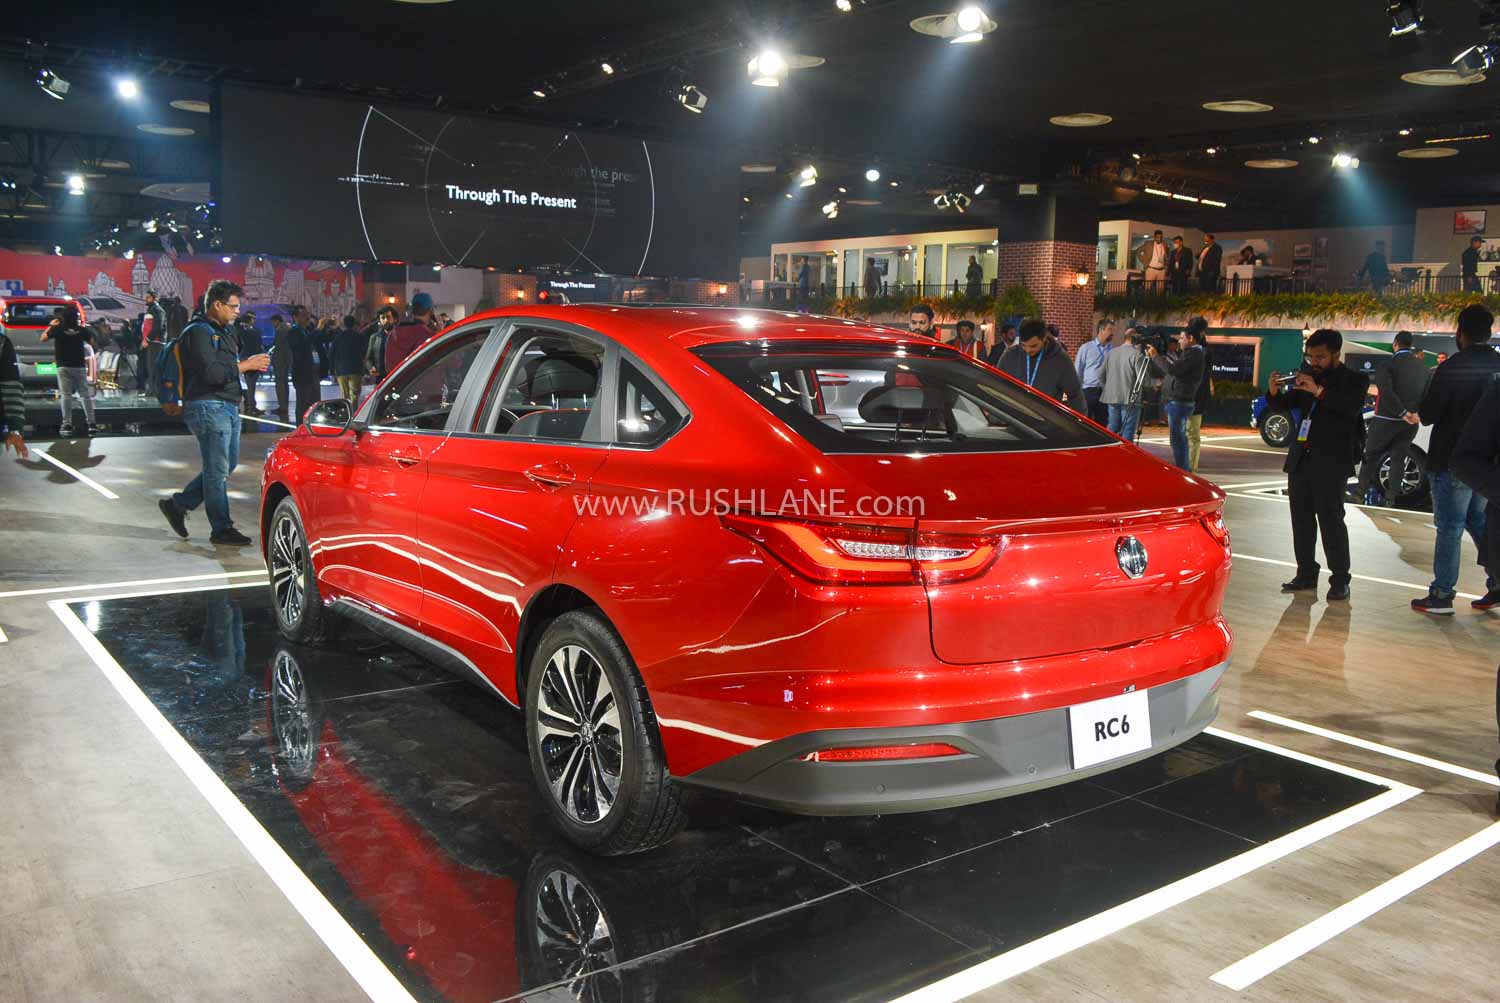 MG RC6 sedan at Auto Expo 2020